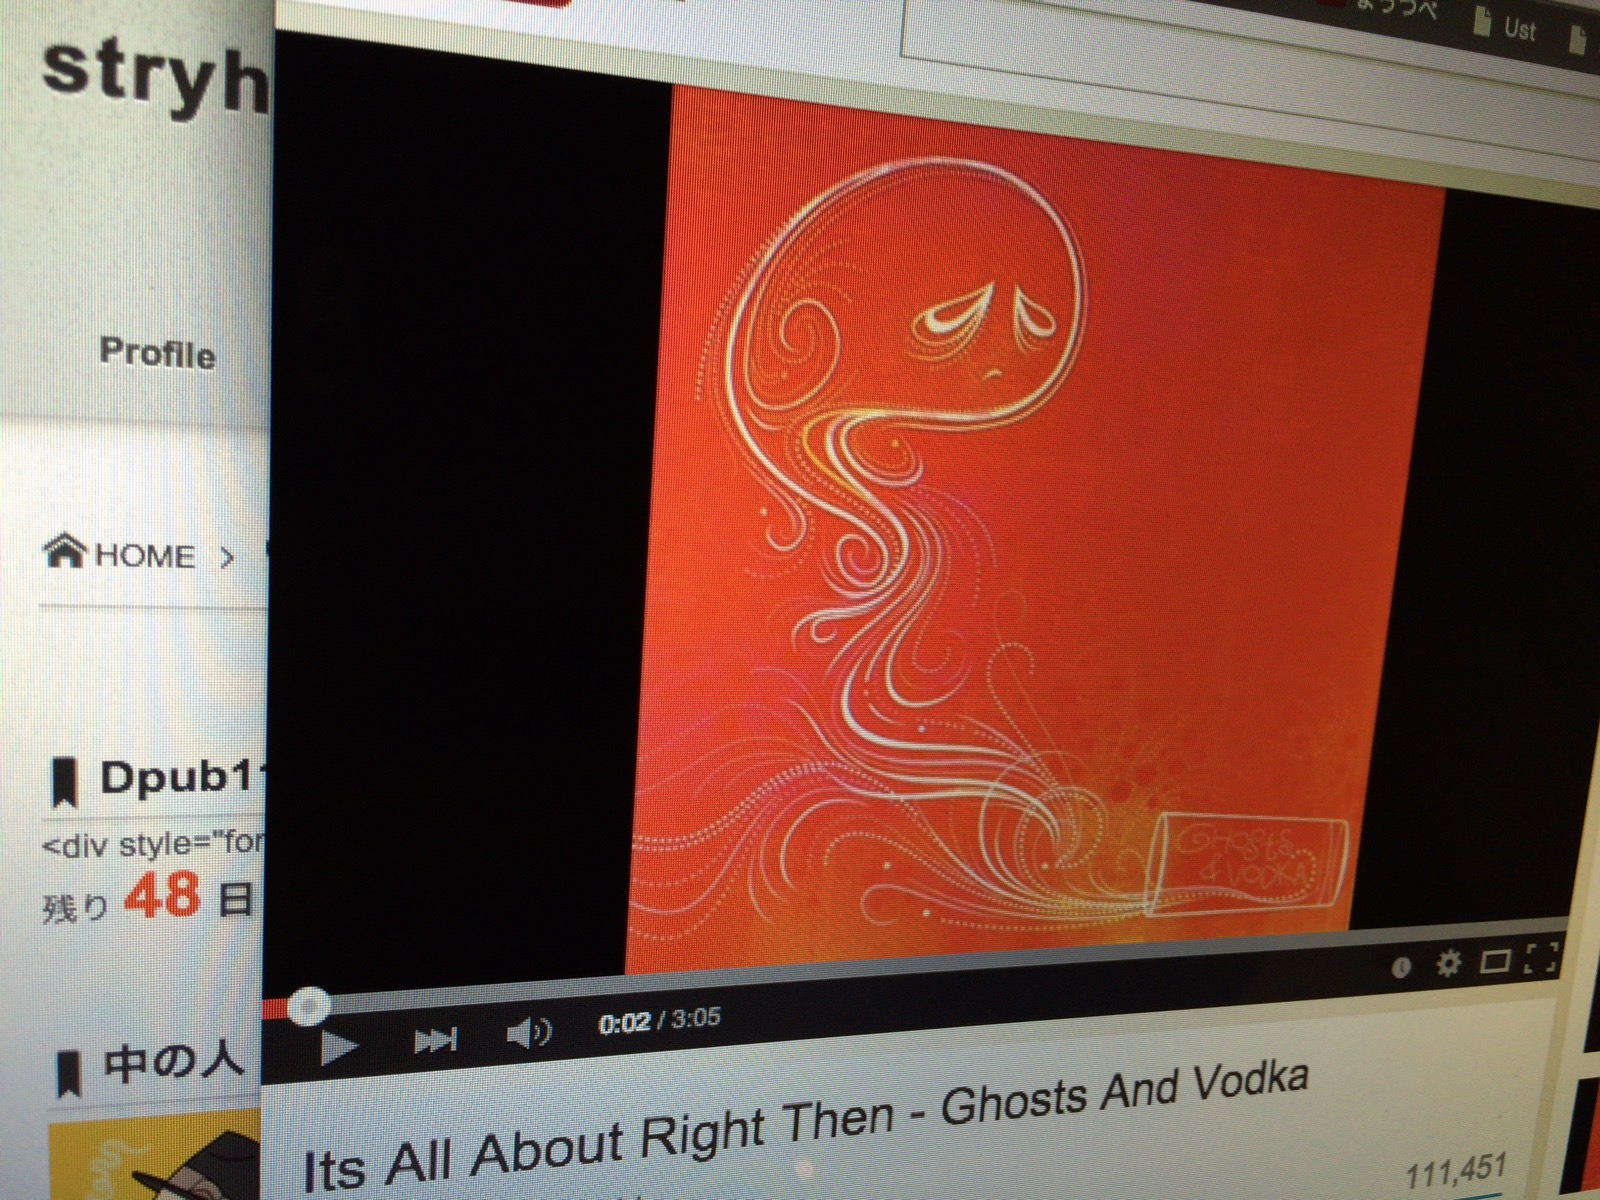 ポストロックでカッコイイバンドないかな〜と探していたら見つけたバンド『Ghosts And Vodka』[MusicLogVol.96]